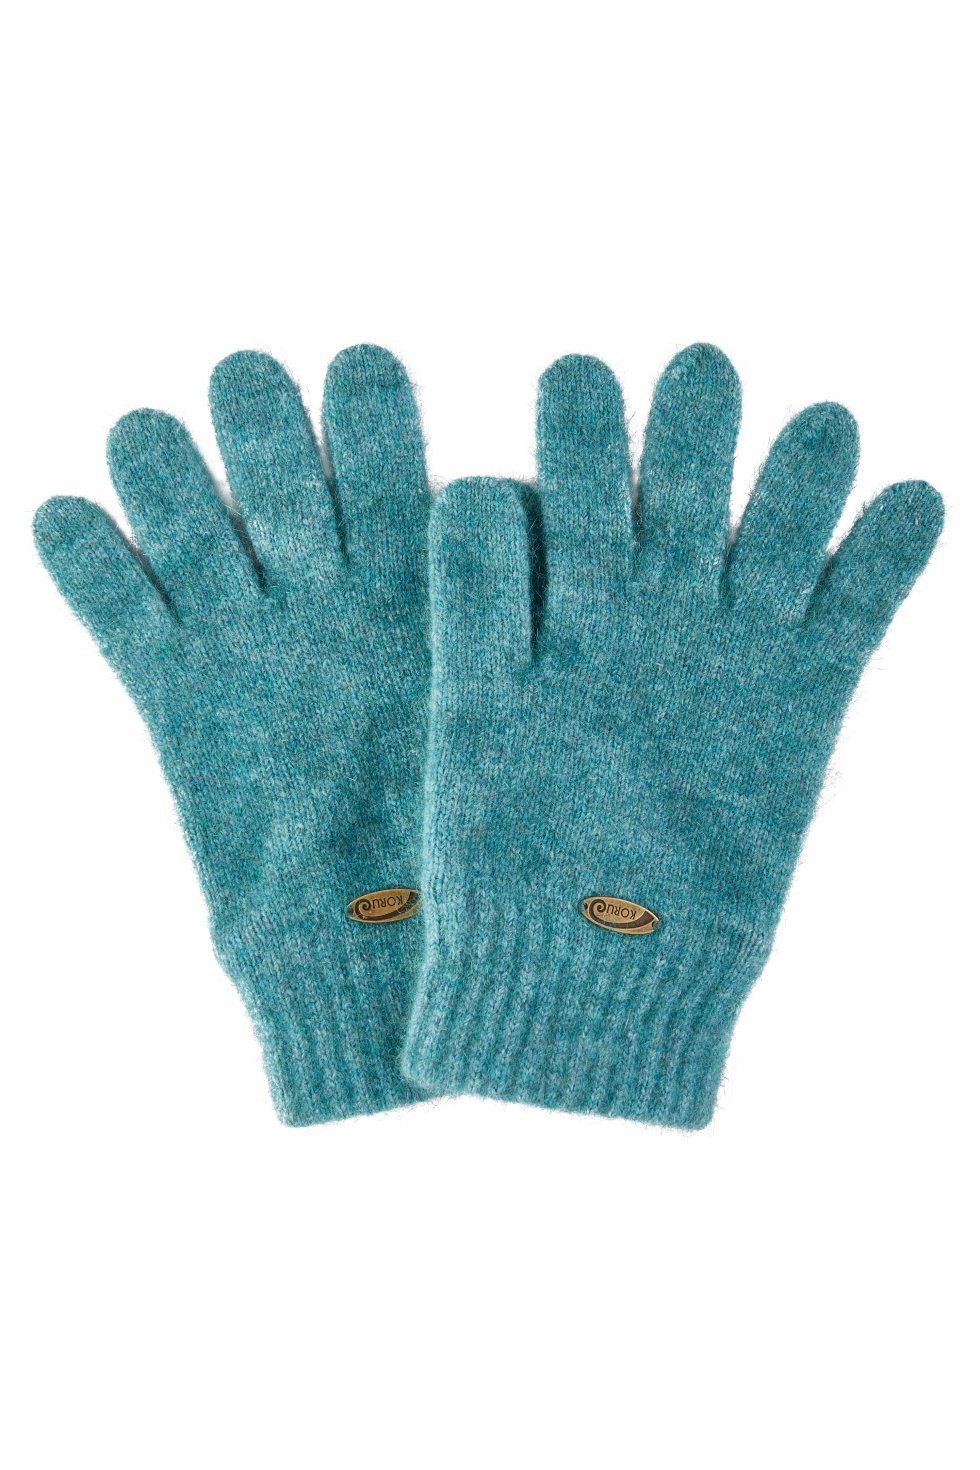 Koru Knitwear Strickhandschuhe Handschuhe aus der Possumhaarfaser lagoon